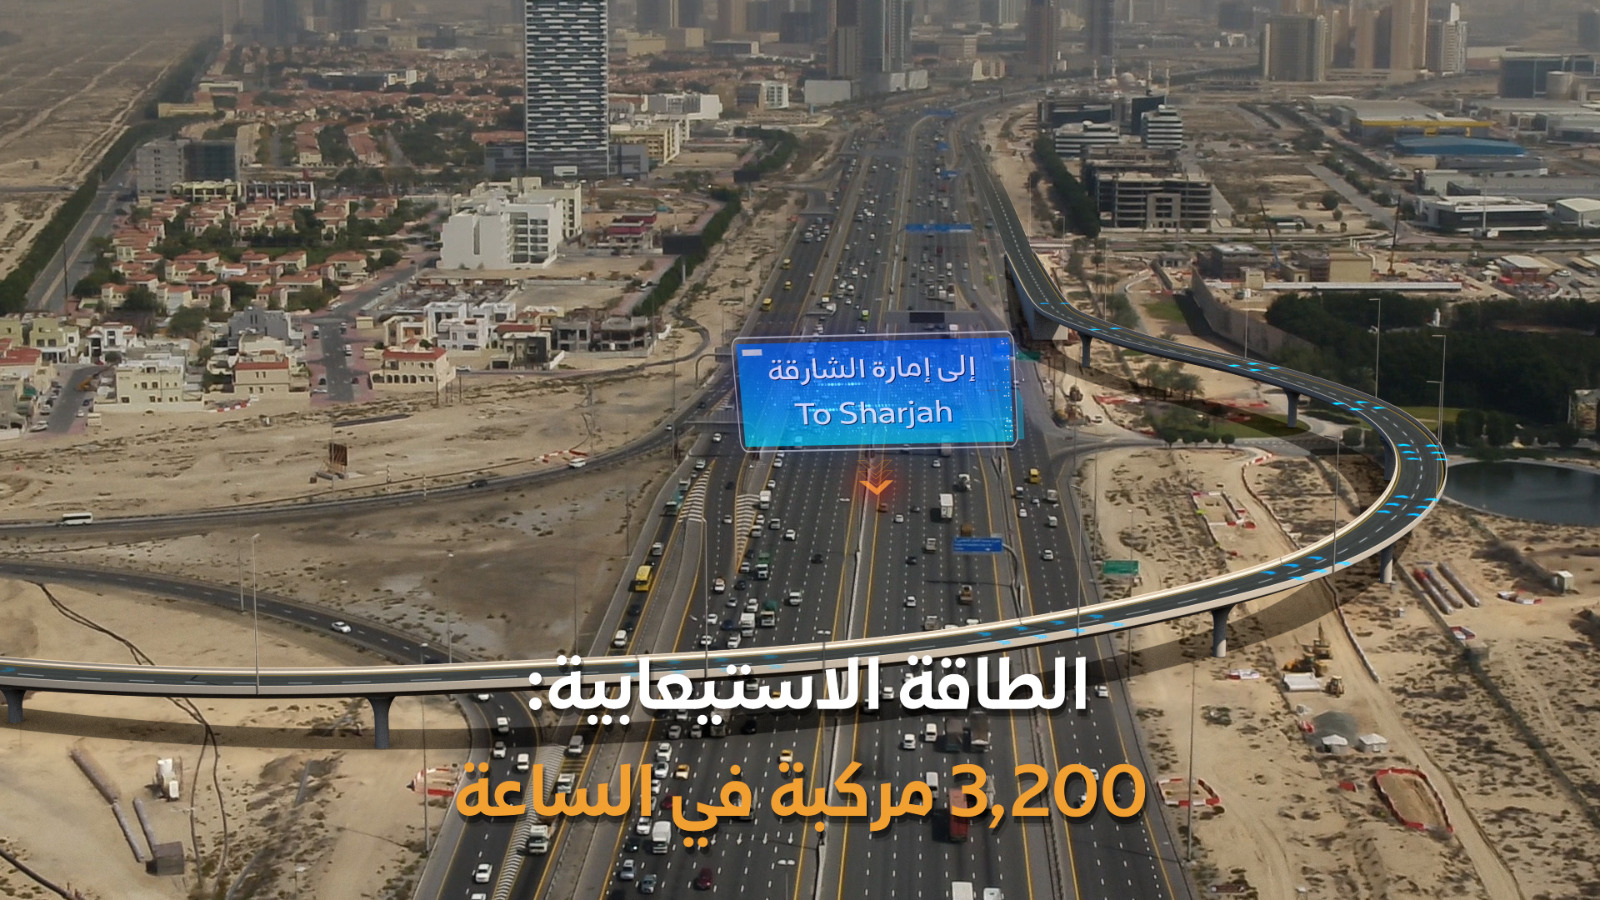 (طرق دبي) ترسي عقد مشروع تطوير تقاطع شارع جرن السبخة مع شارع الشيخ محمد بن زايد